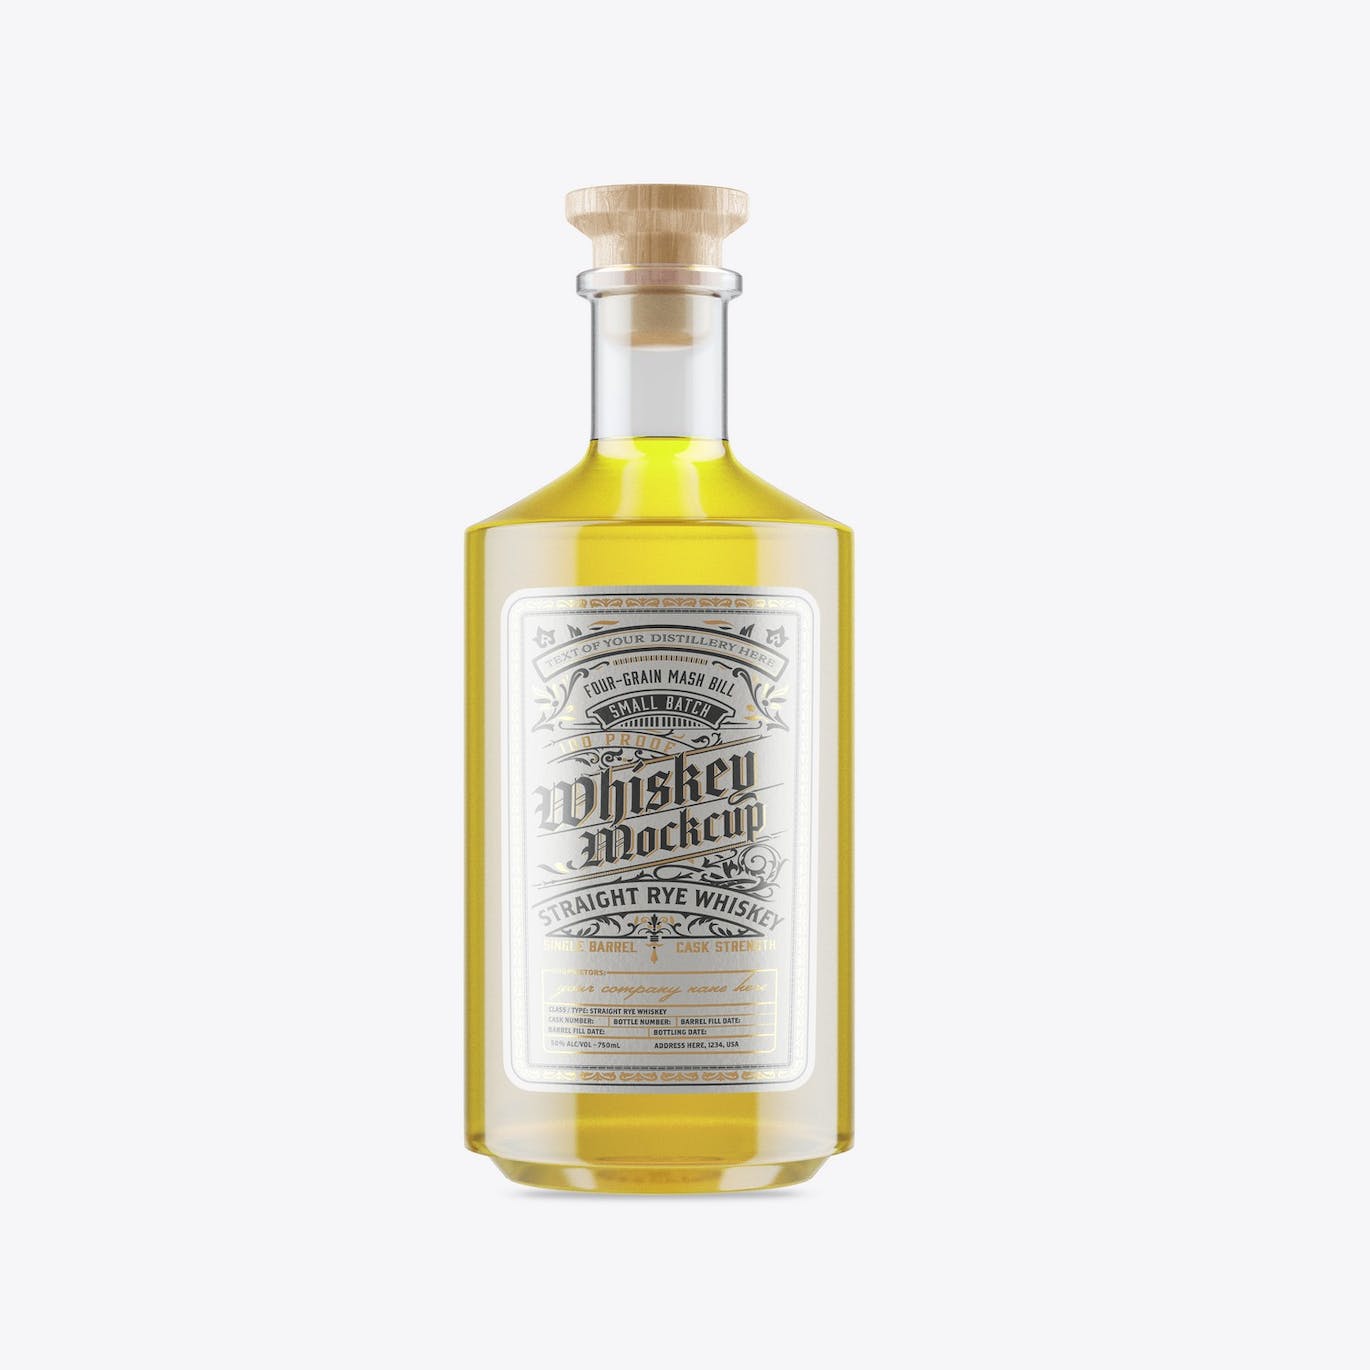 威士忌酒玻璃瓶包装设计样机 Pack Whiskey Liquor Glass Bottle Mockup 样机素材 第6张